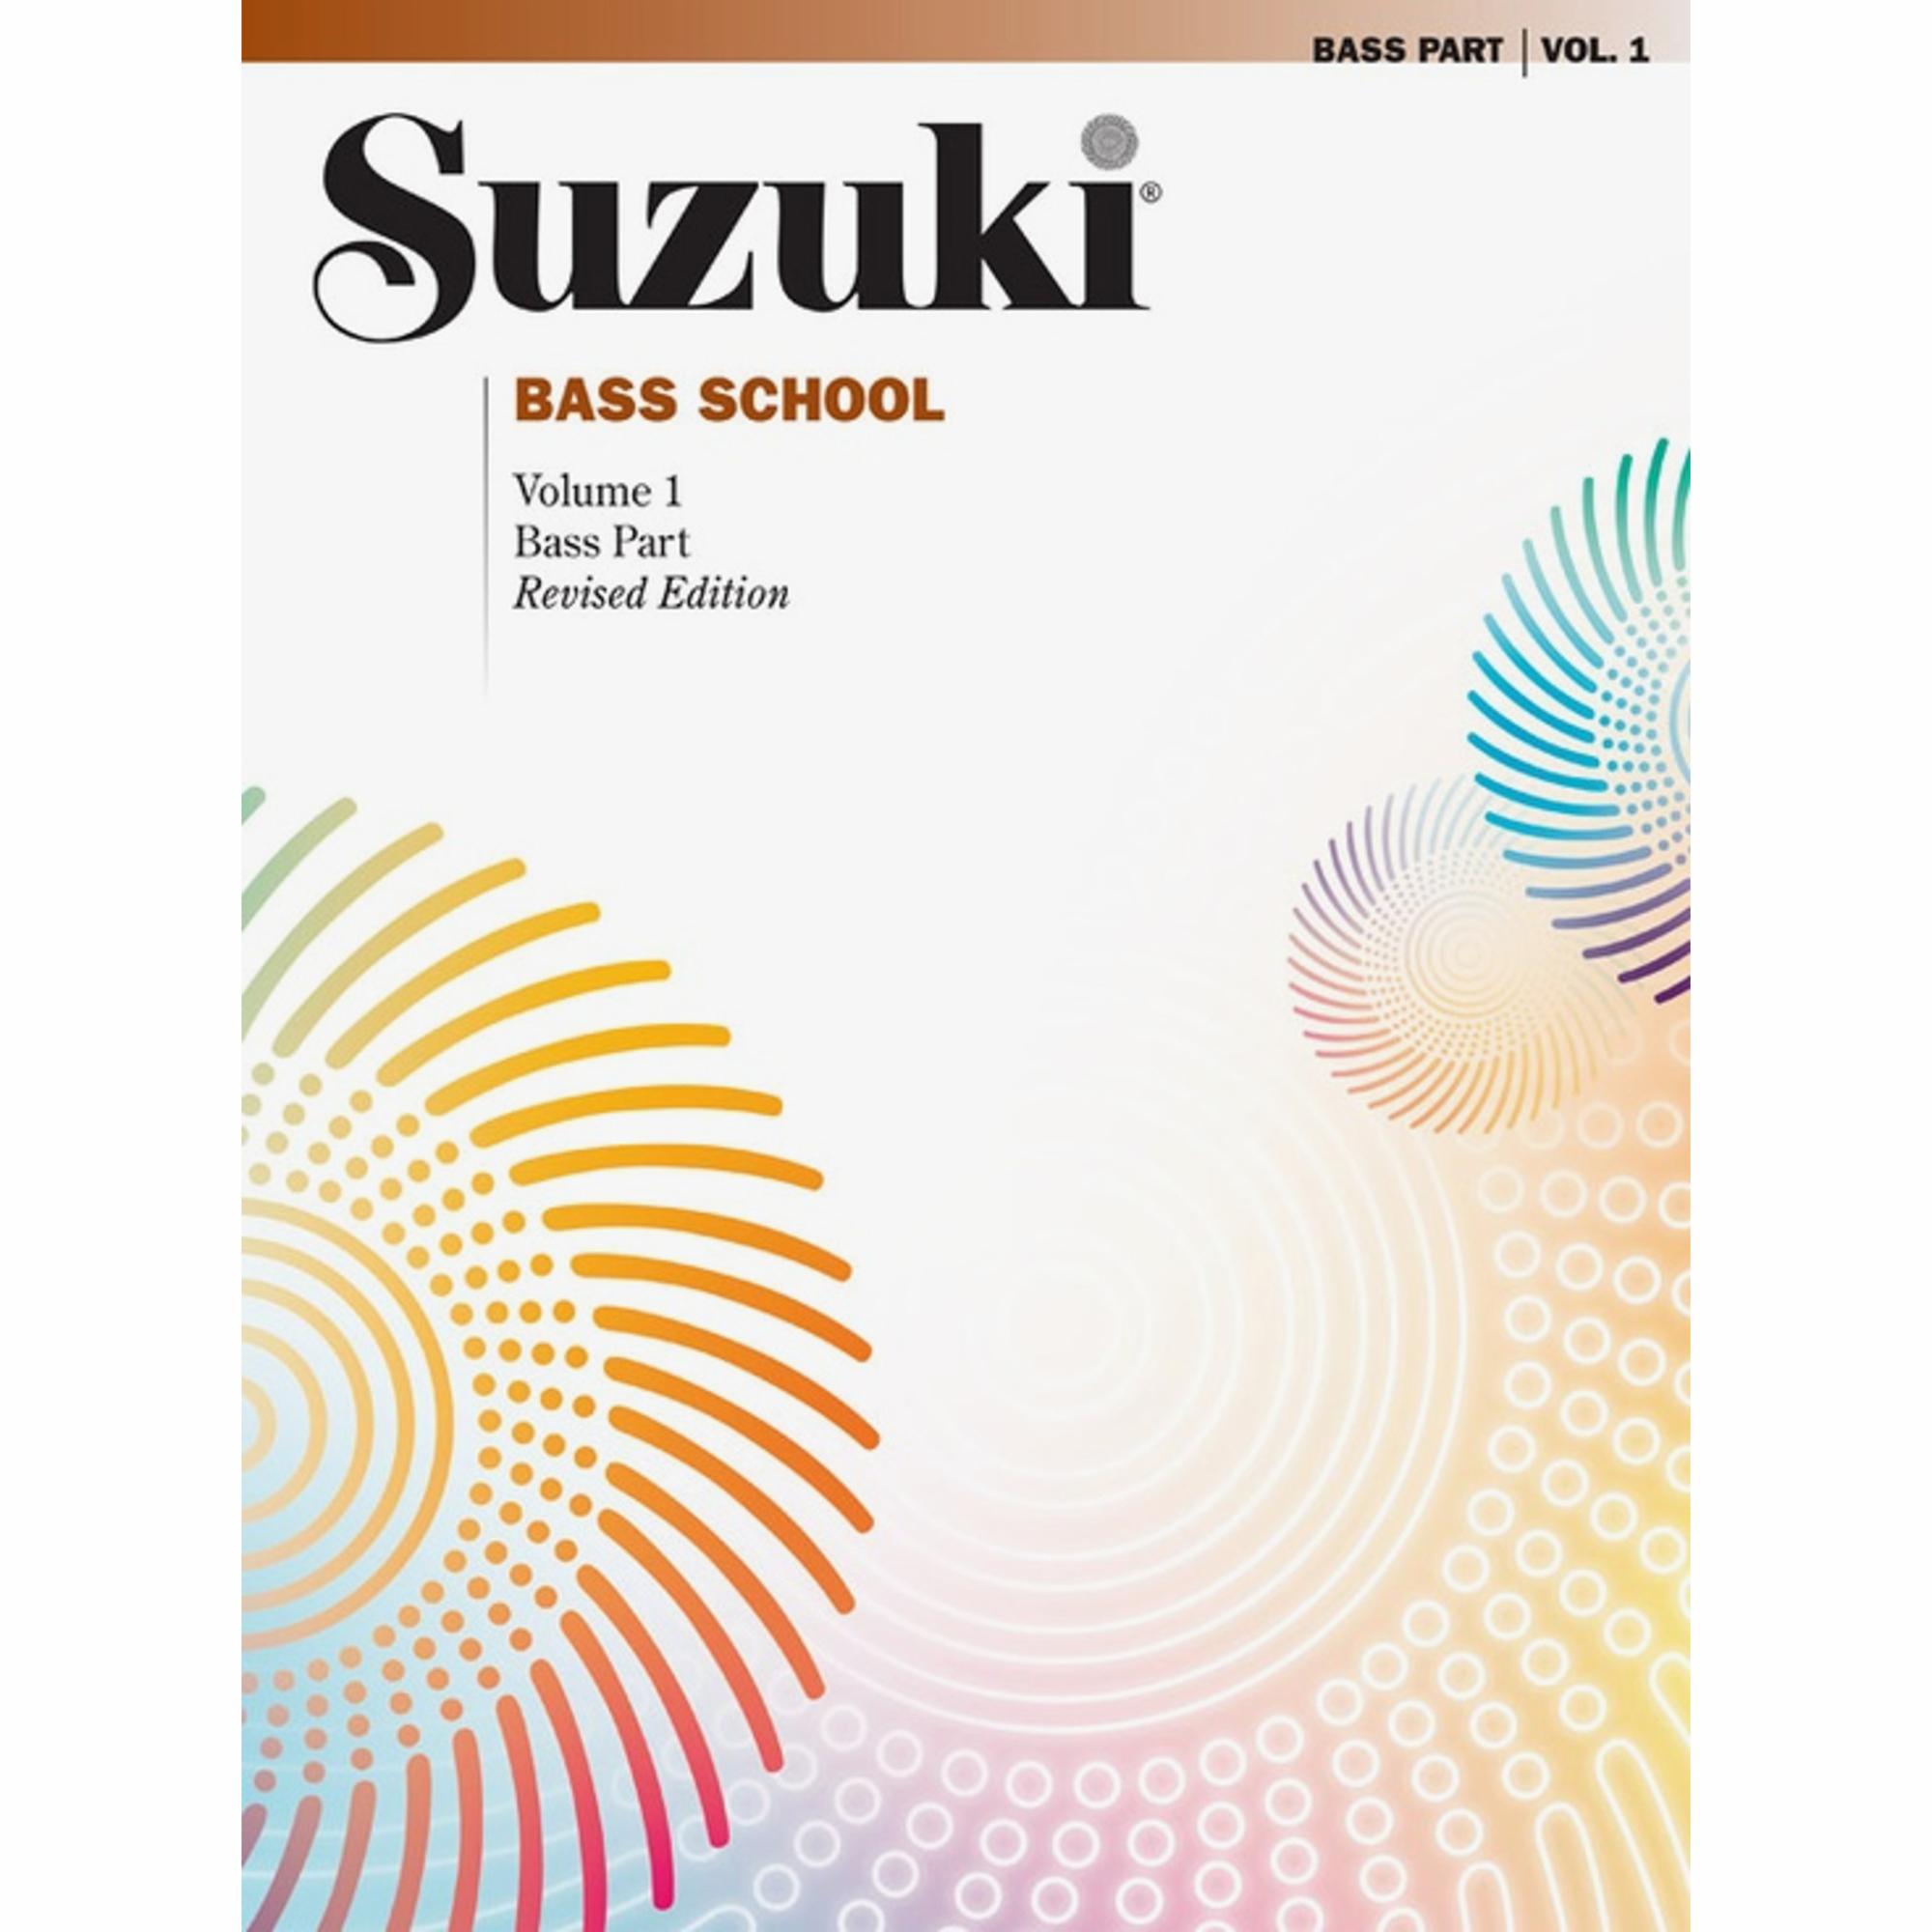 Suzuki Bass School: Bass Parts